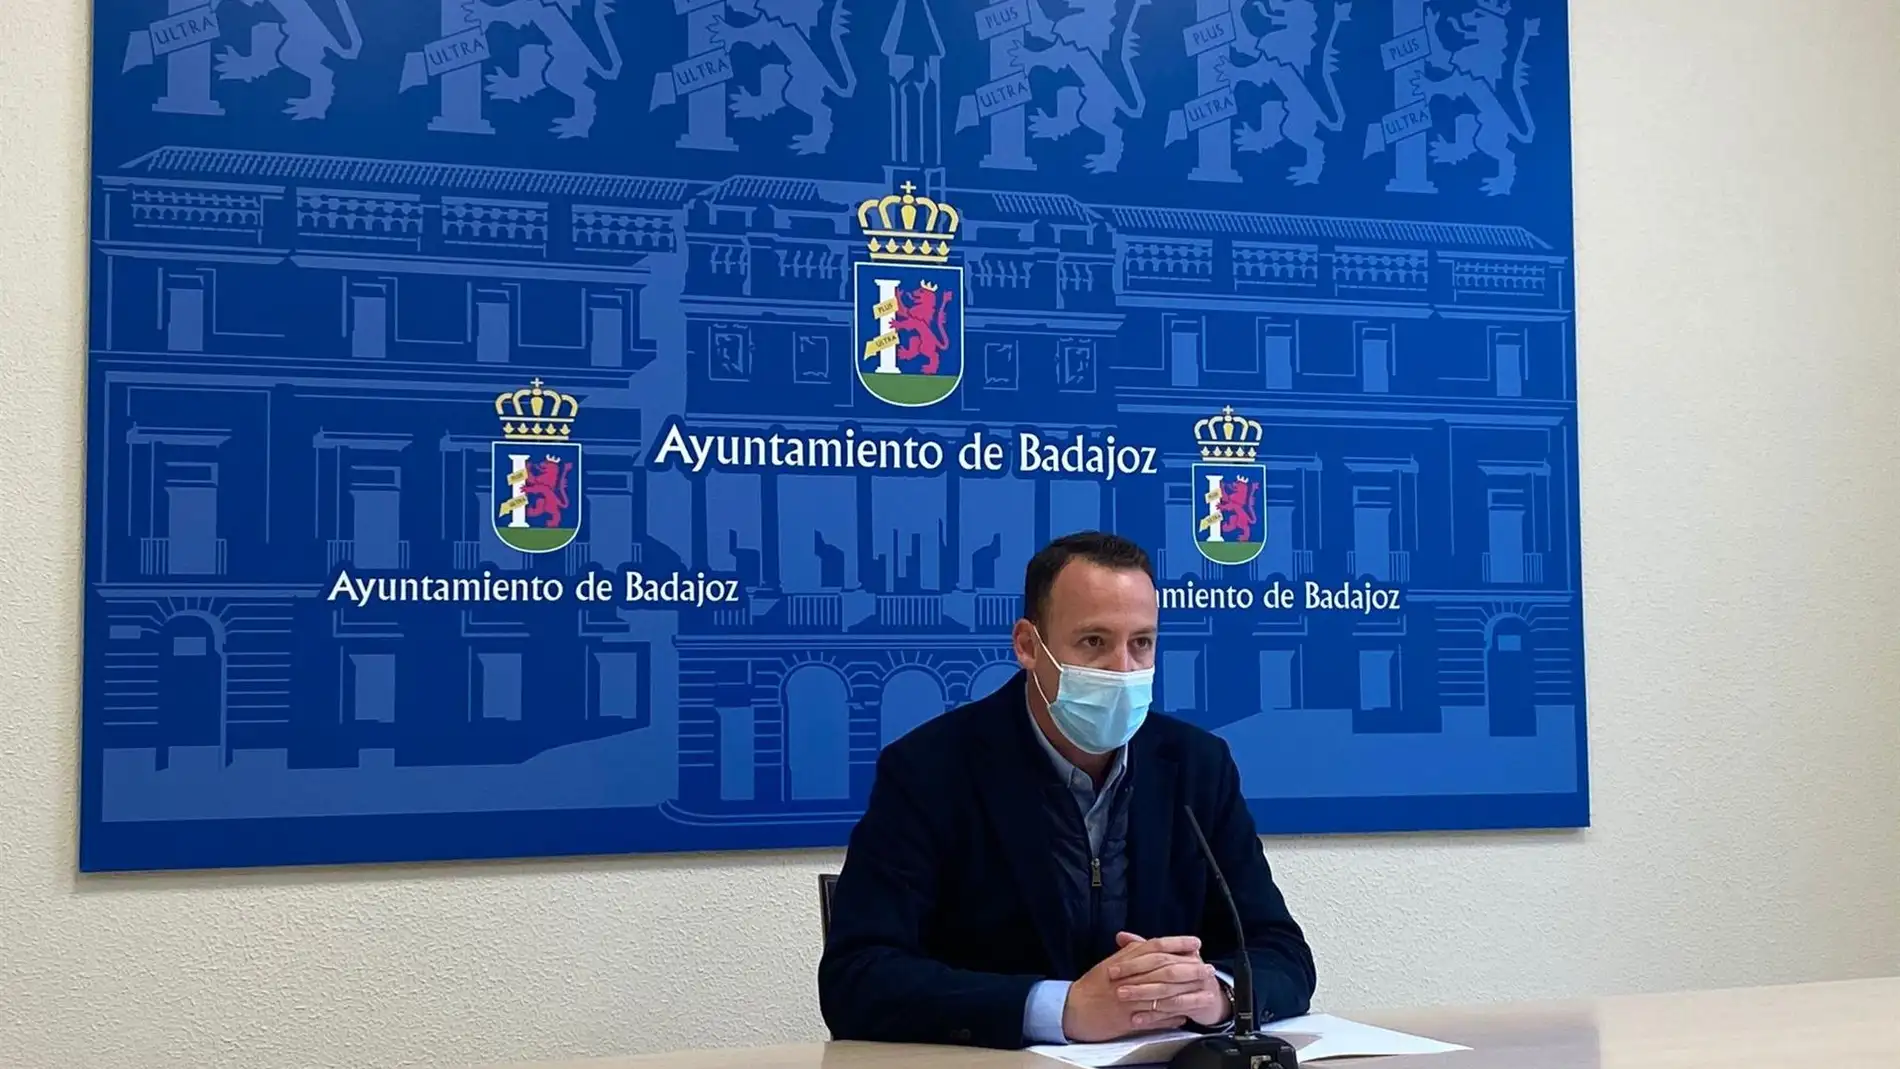 El Ayuntamiento de Badajoz lanza una campaña de promoción y apoyo al sector de la Hostelería